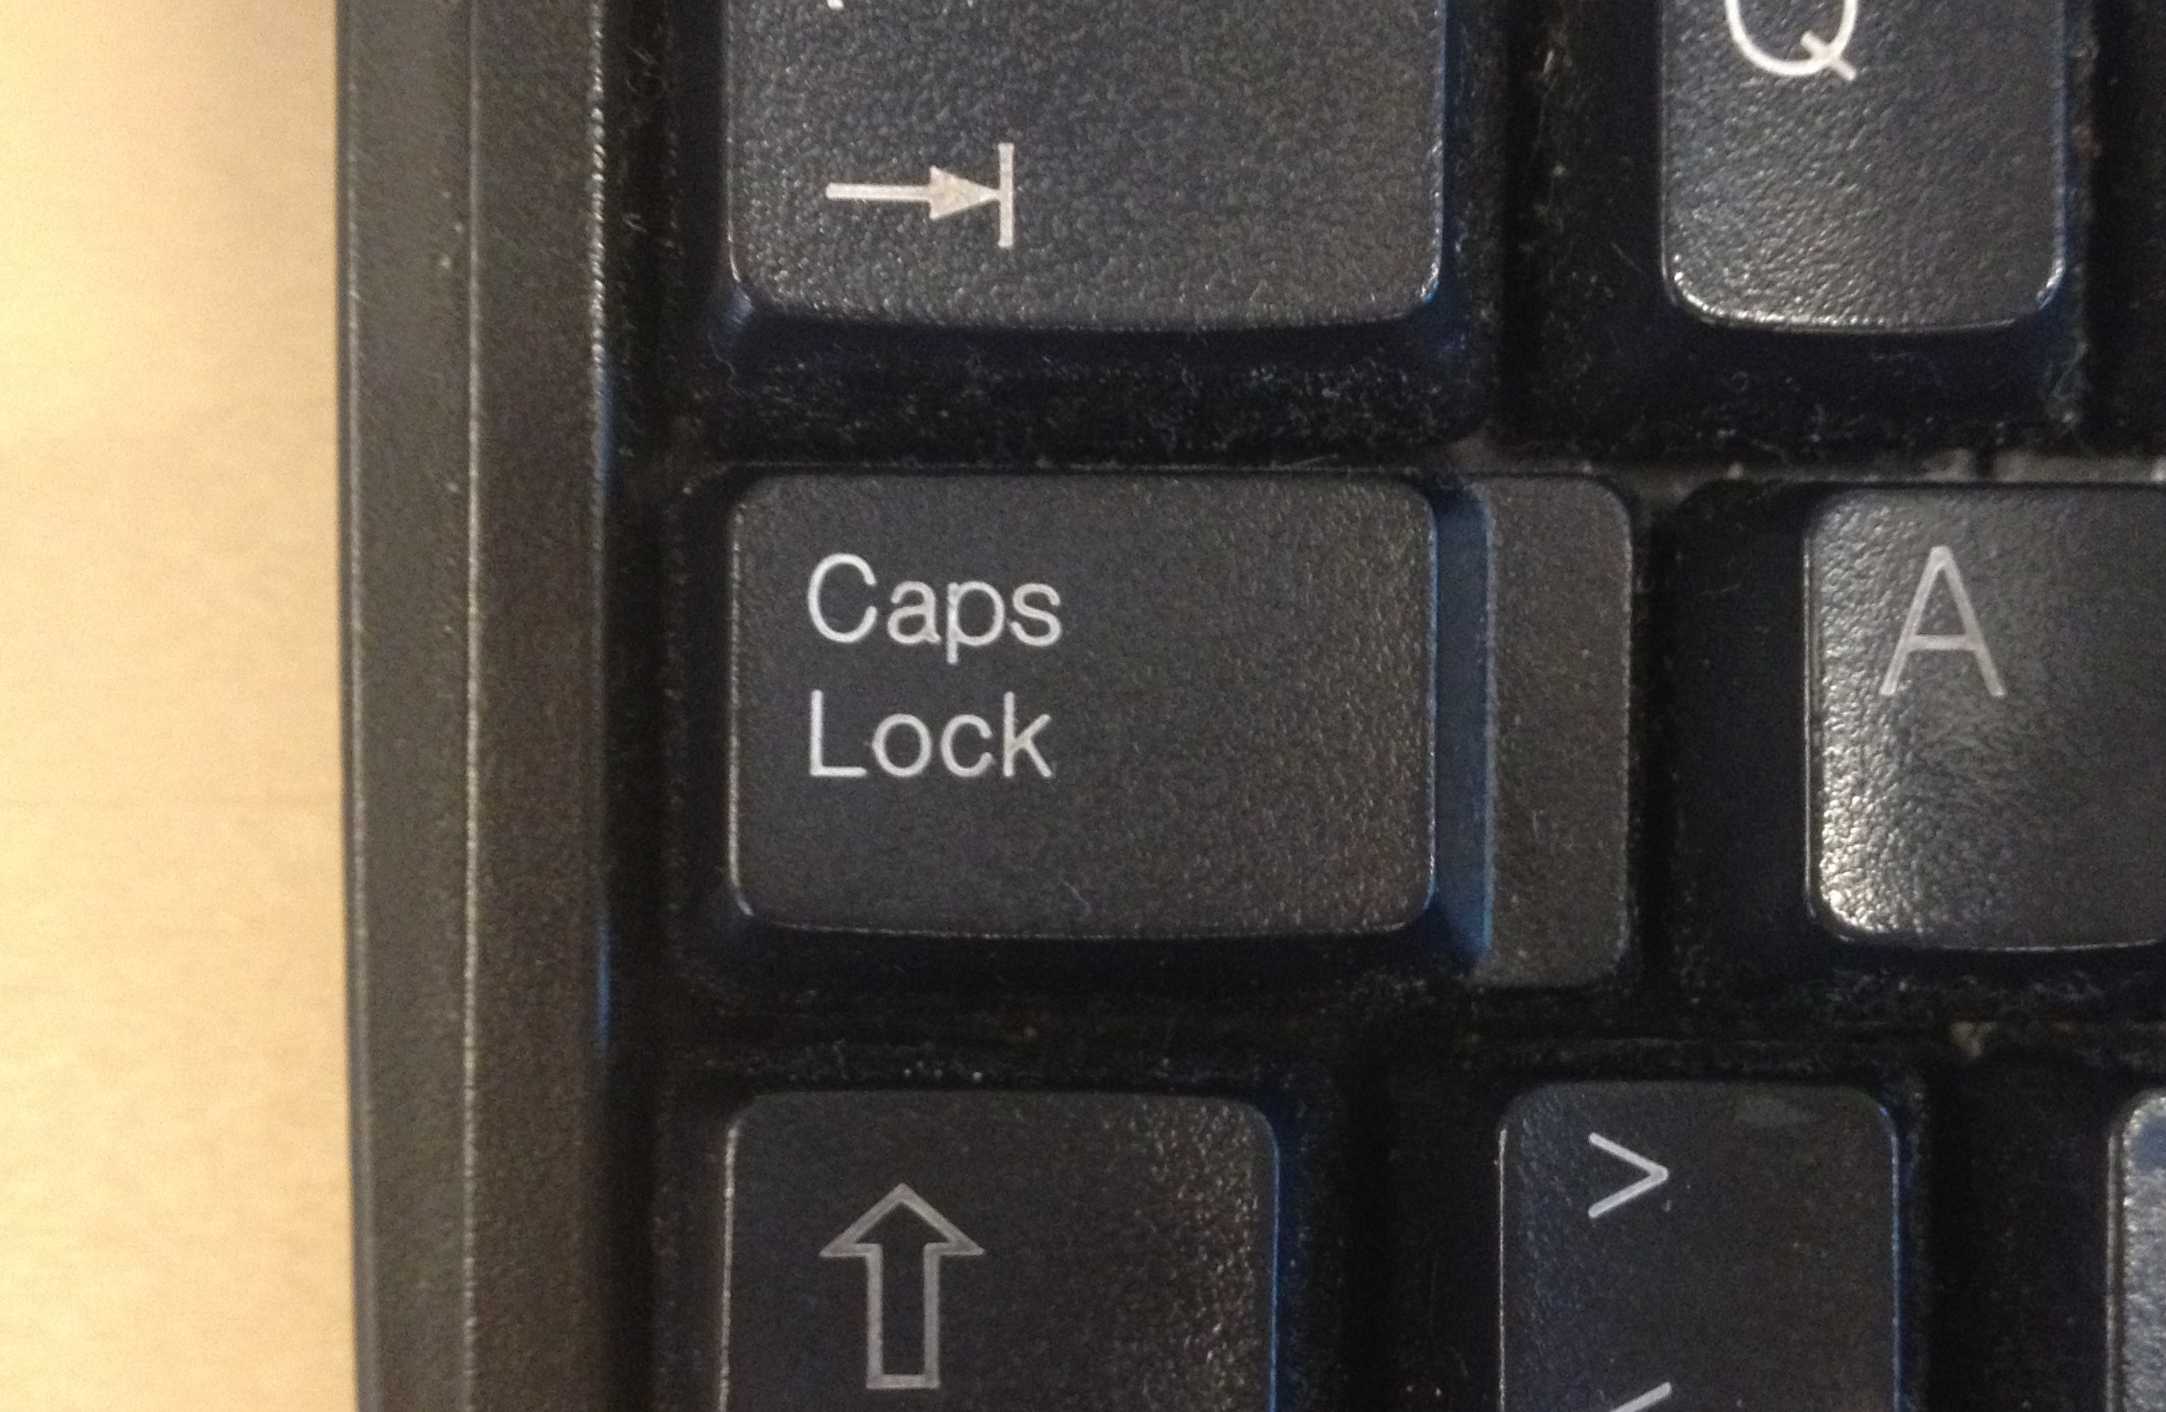 Что такое капс лок на компьютере и вконтакте? caps lock что это такое на клавиатуре и где она